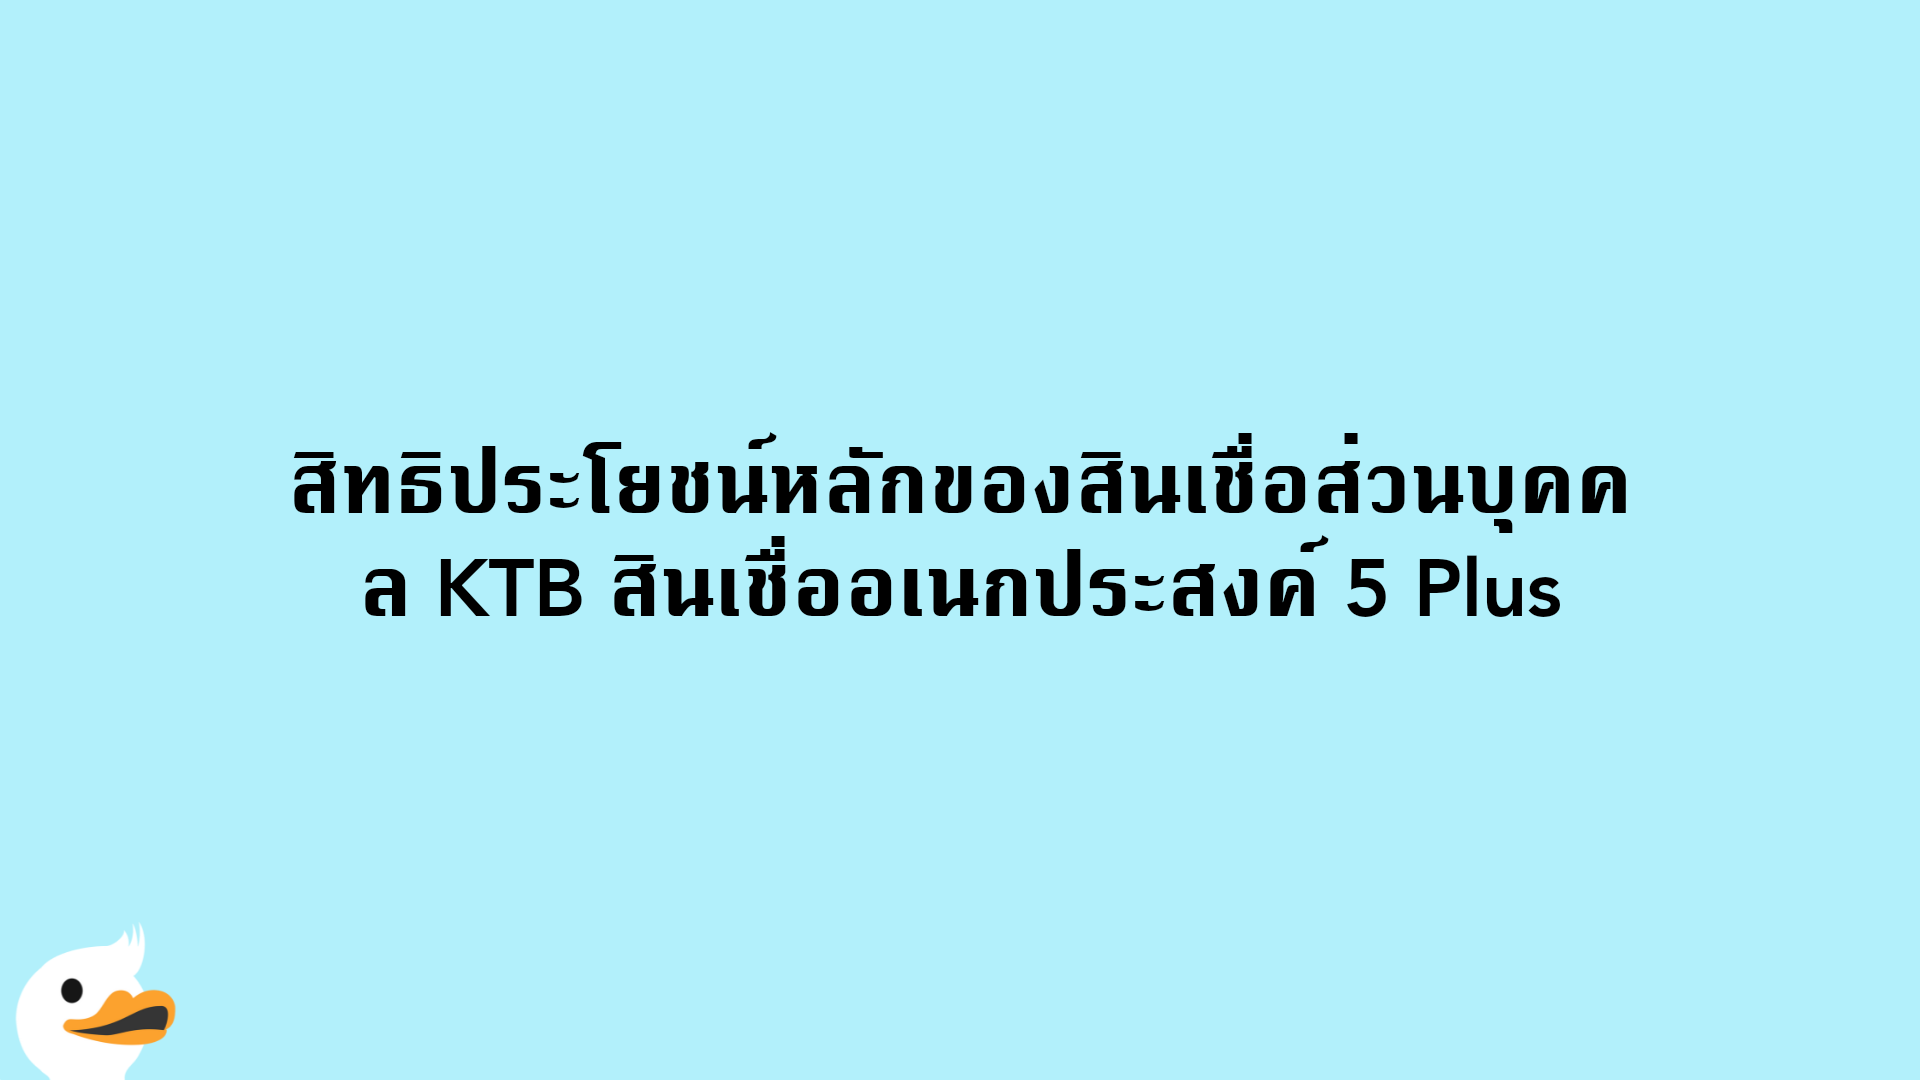 สิทธิประโยชน์หลักของสินเชื่อส่วนบุคคล KTB สินเชื่ออเนกประสงค์ 5 Plus